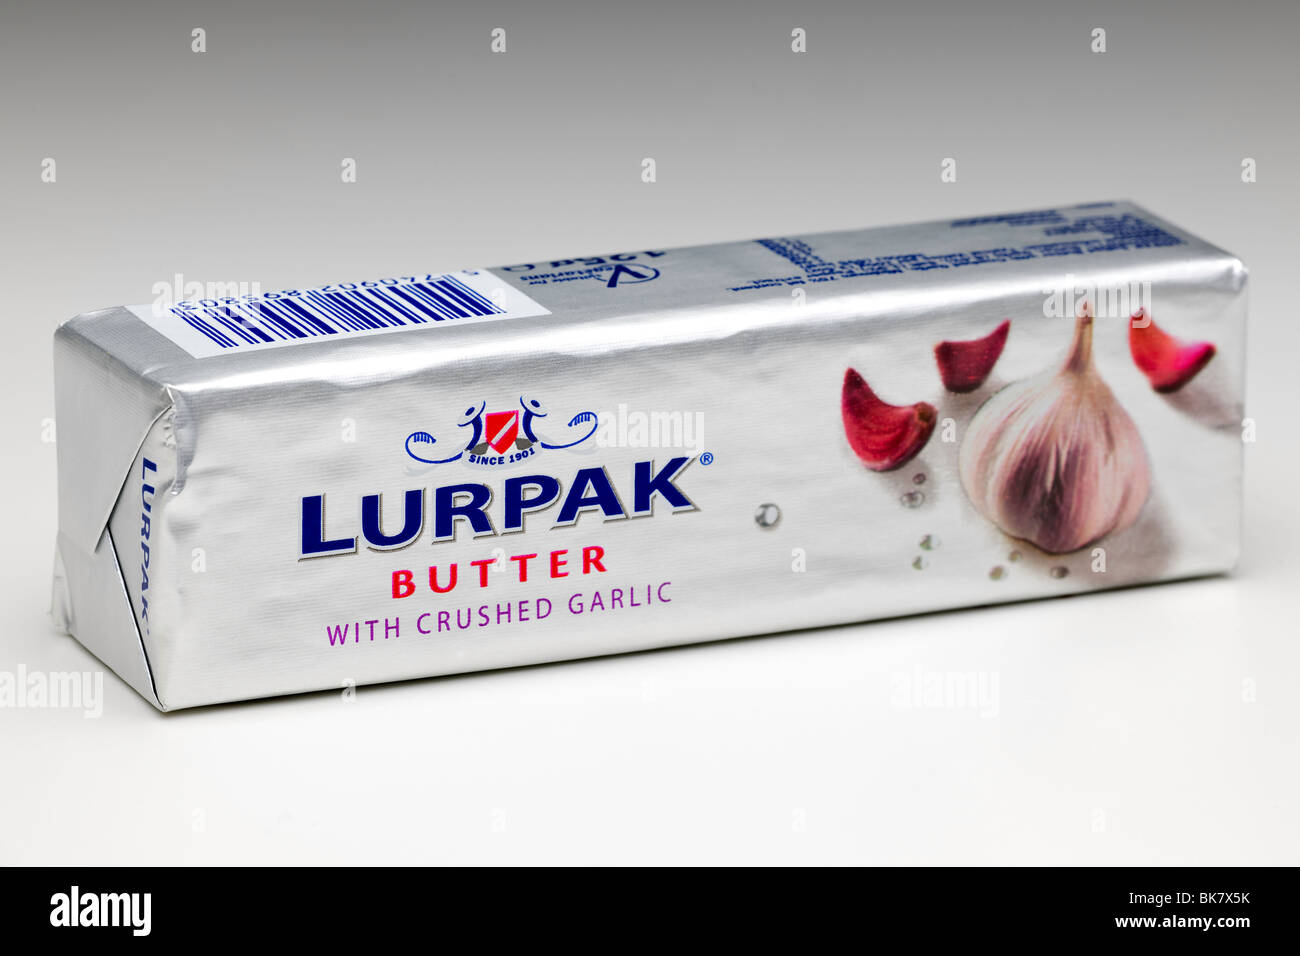 Bloc de 125g de beurre Lurpak avec de l'ail écrasé Banque D'Images